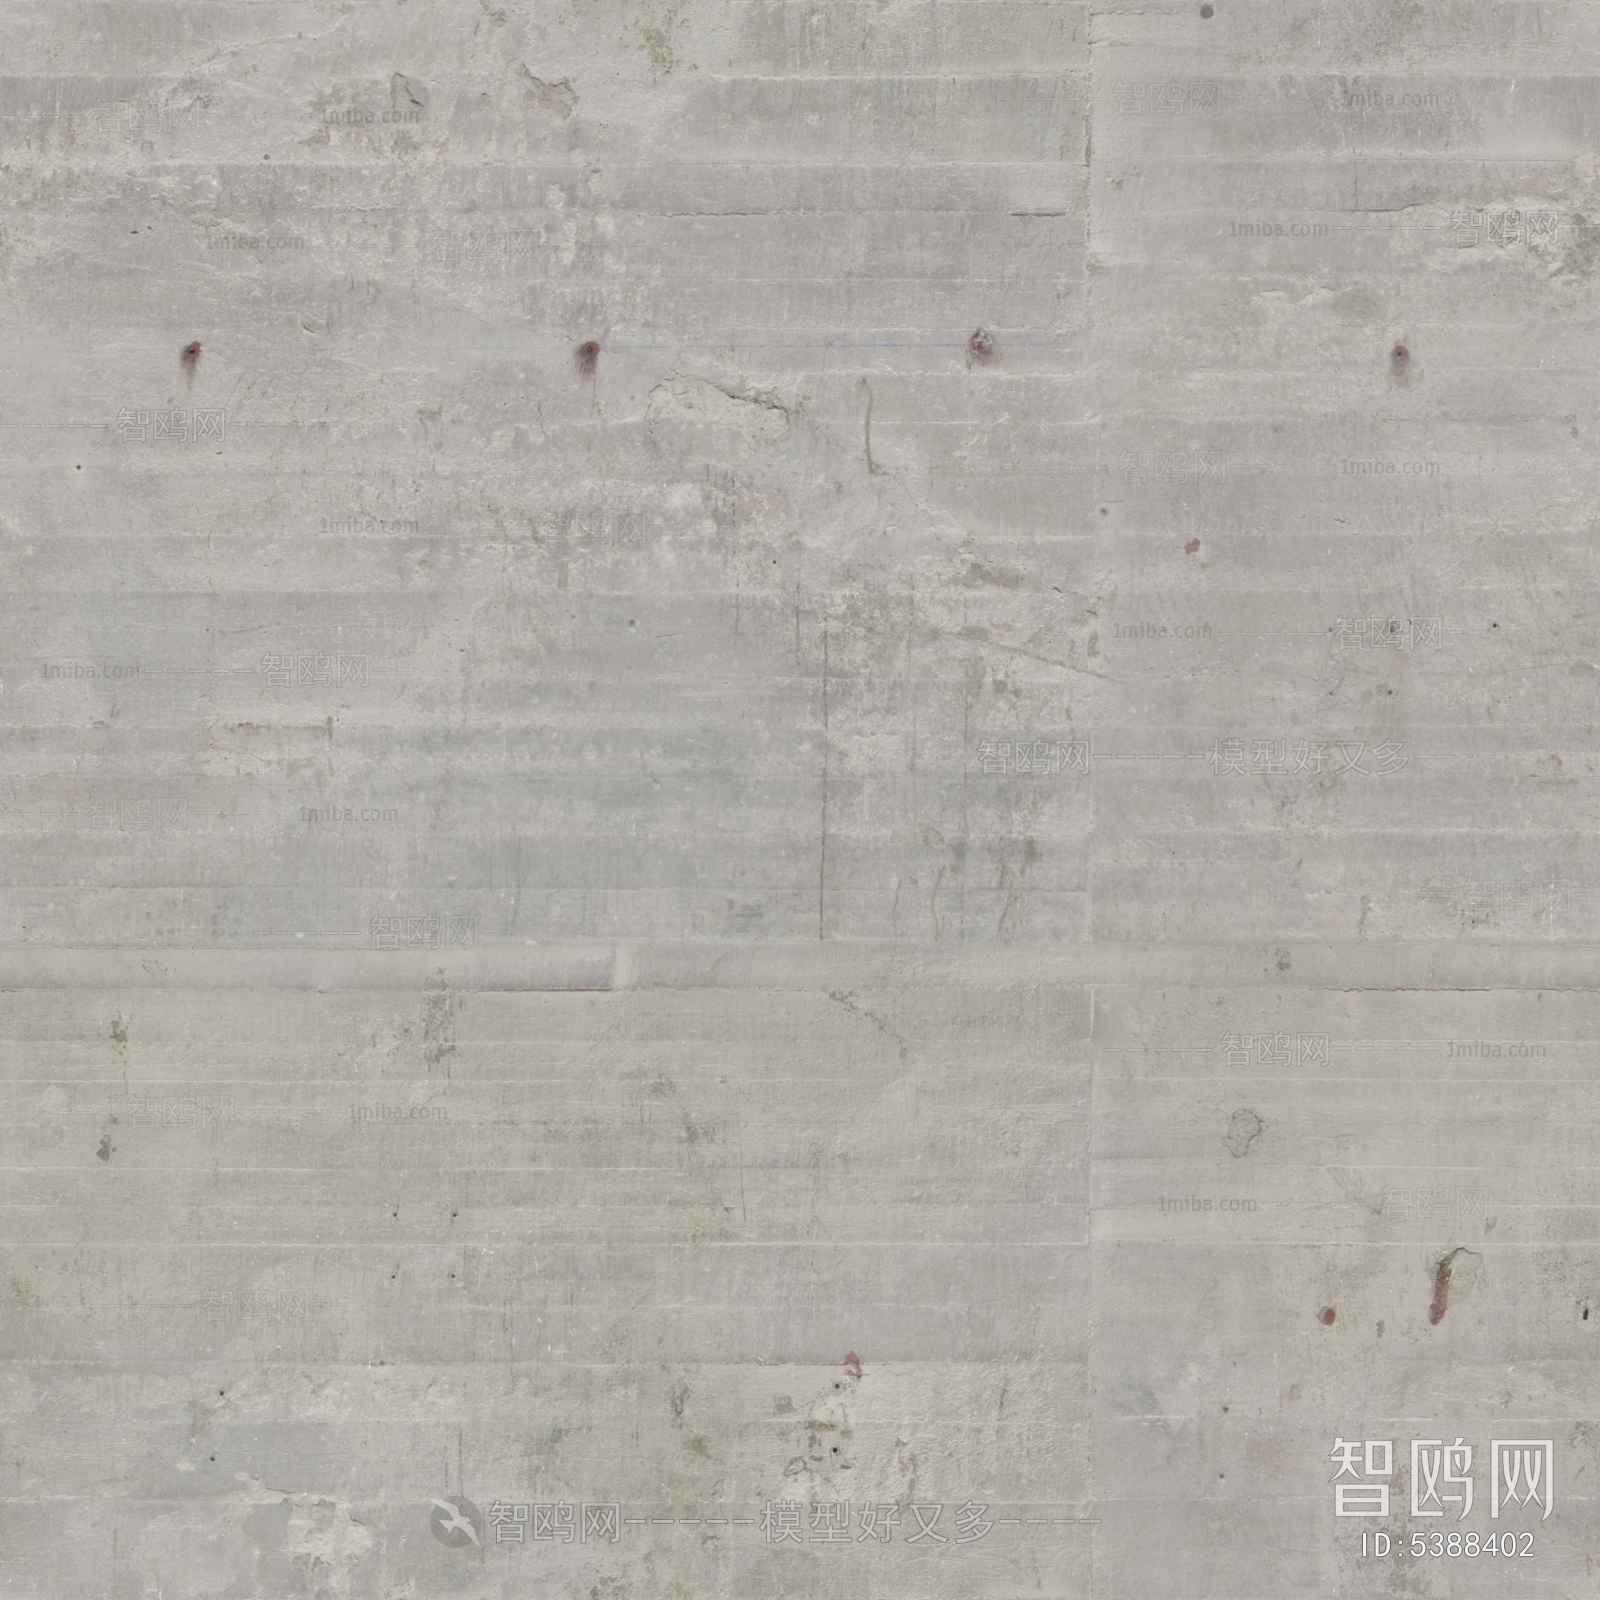 高清石膏水泥混凝土肌理墙面地面贴图